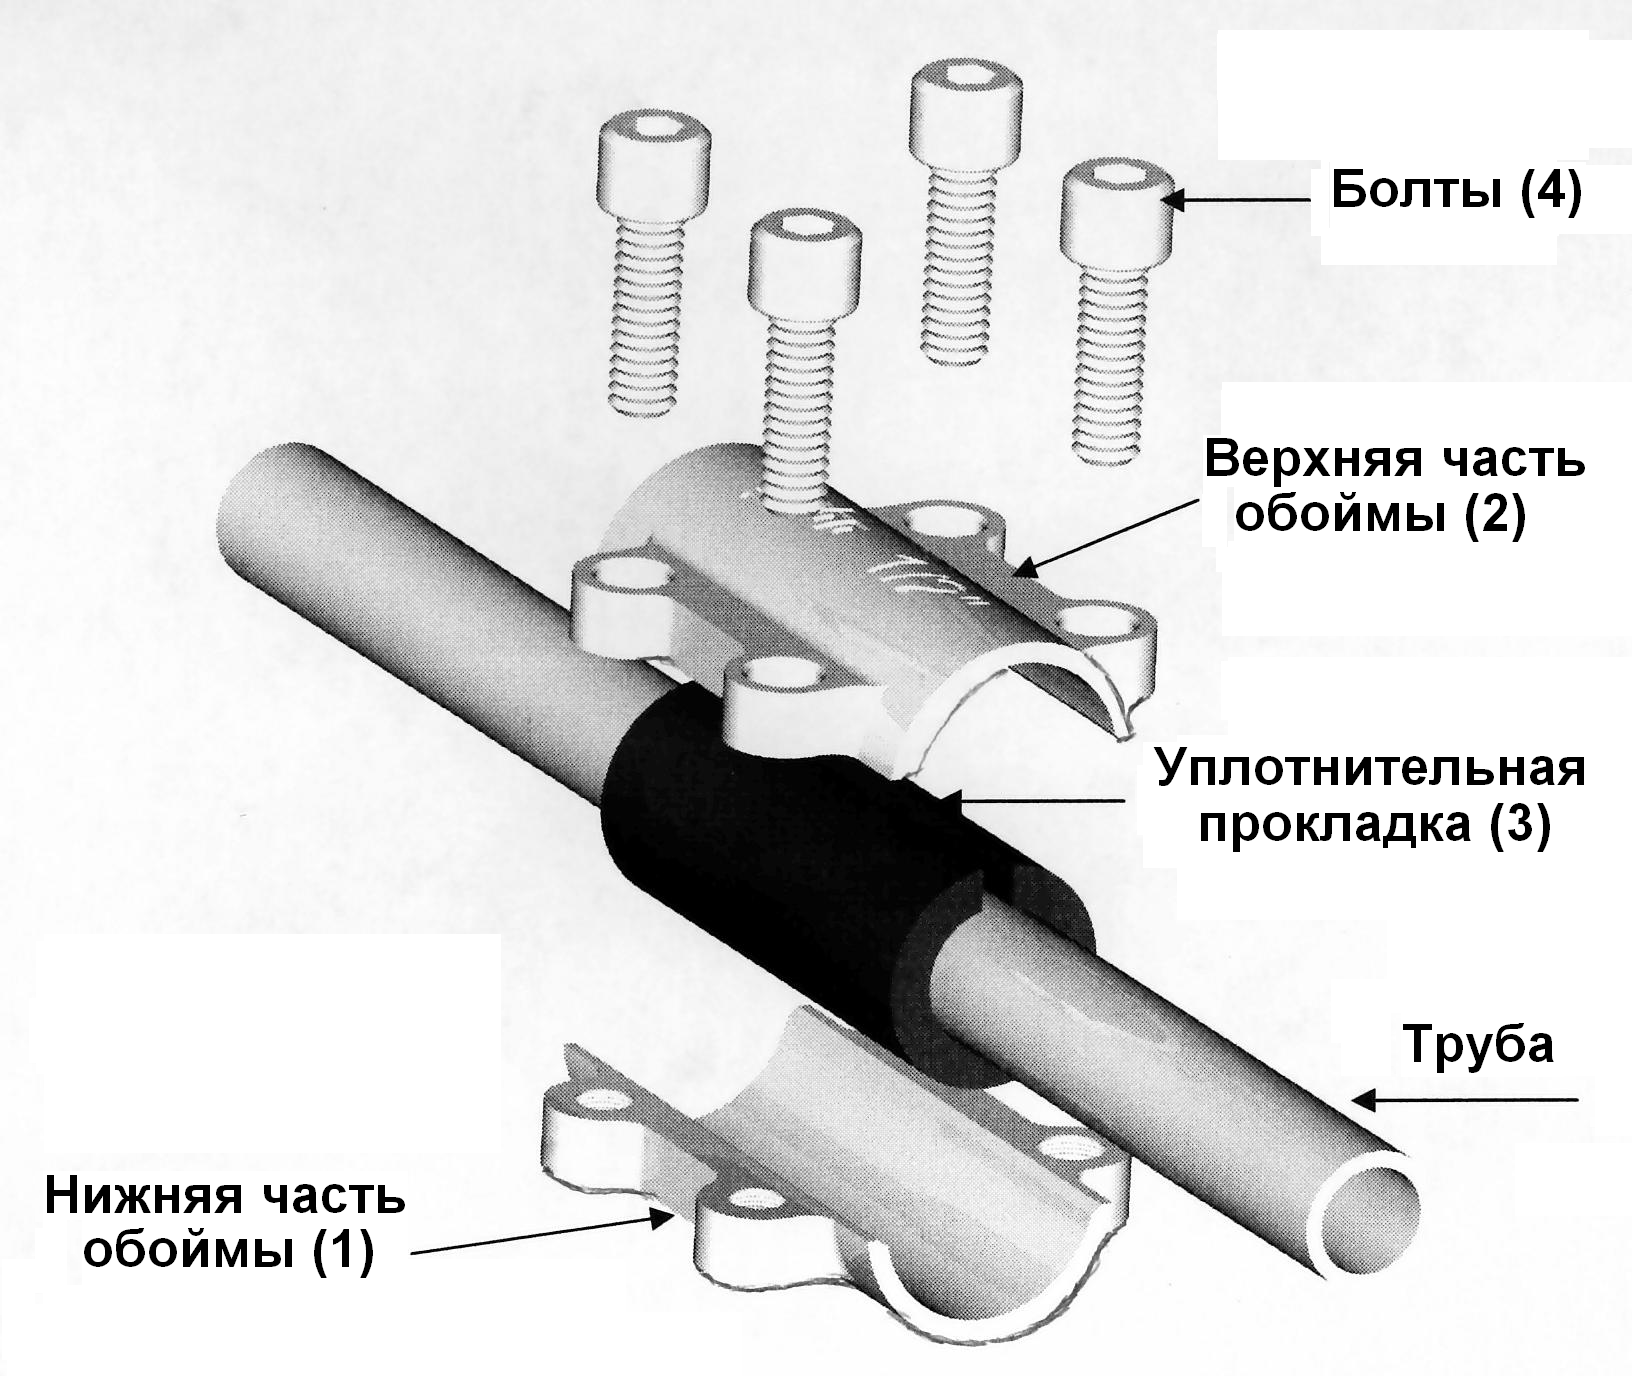 Соединение железной трубы. Обойма ремонтная Gebo DSK 1/2". Соединение металлических труб без сварки и резьбы. Ремонтная муфта для полипропиленовых труб 1/2. Схема соединения стальных труб на резьбе.